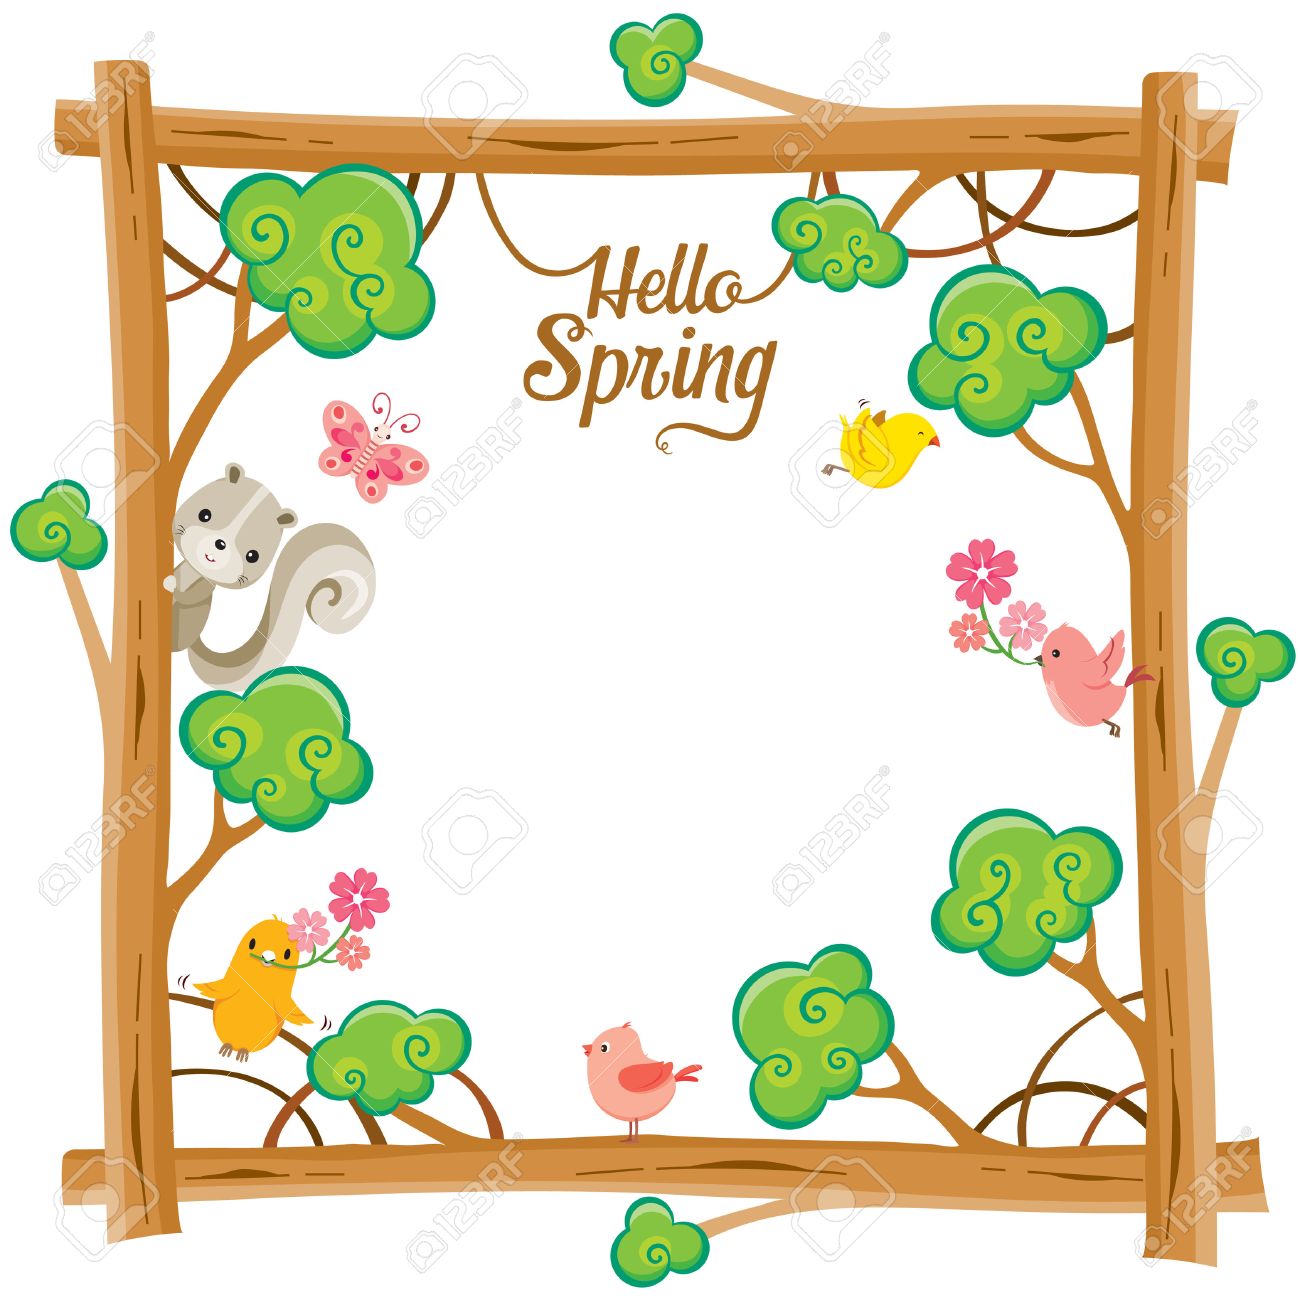 Spring Season Clipart